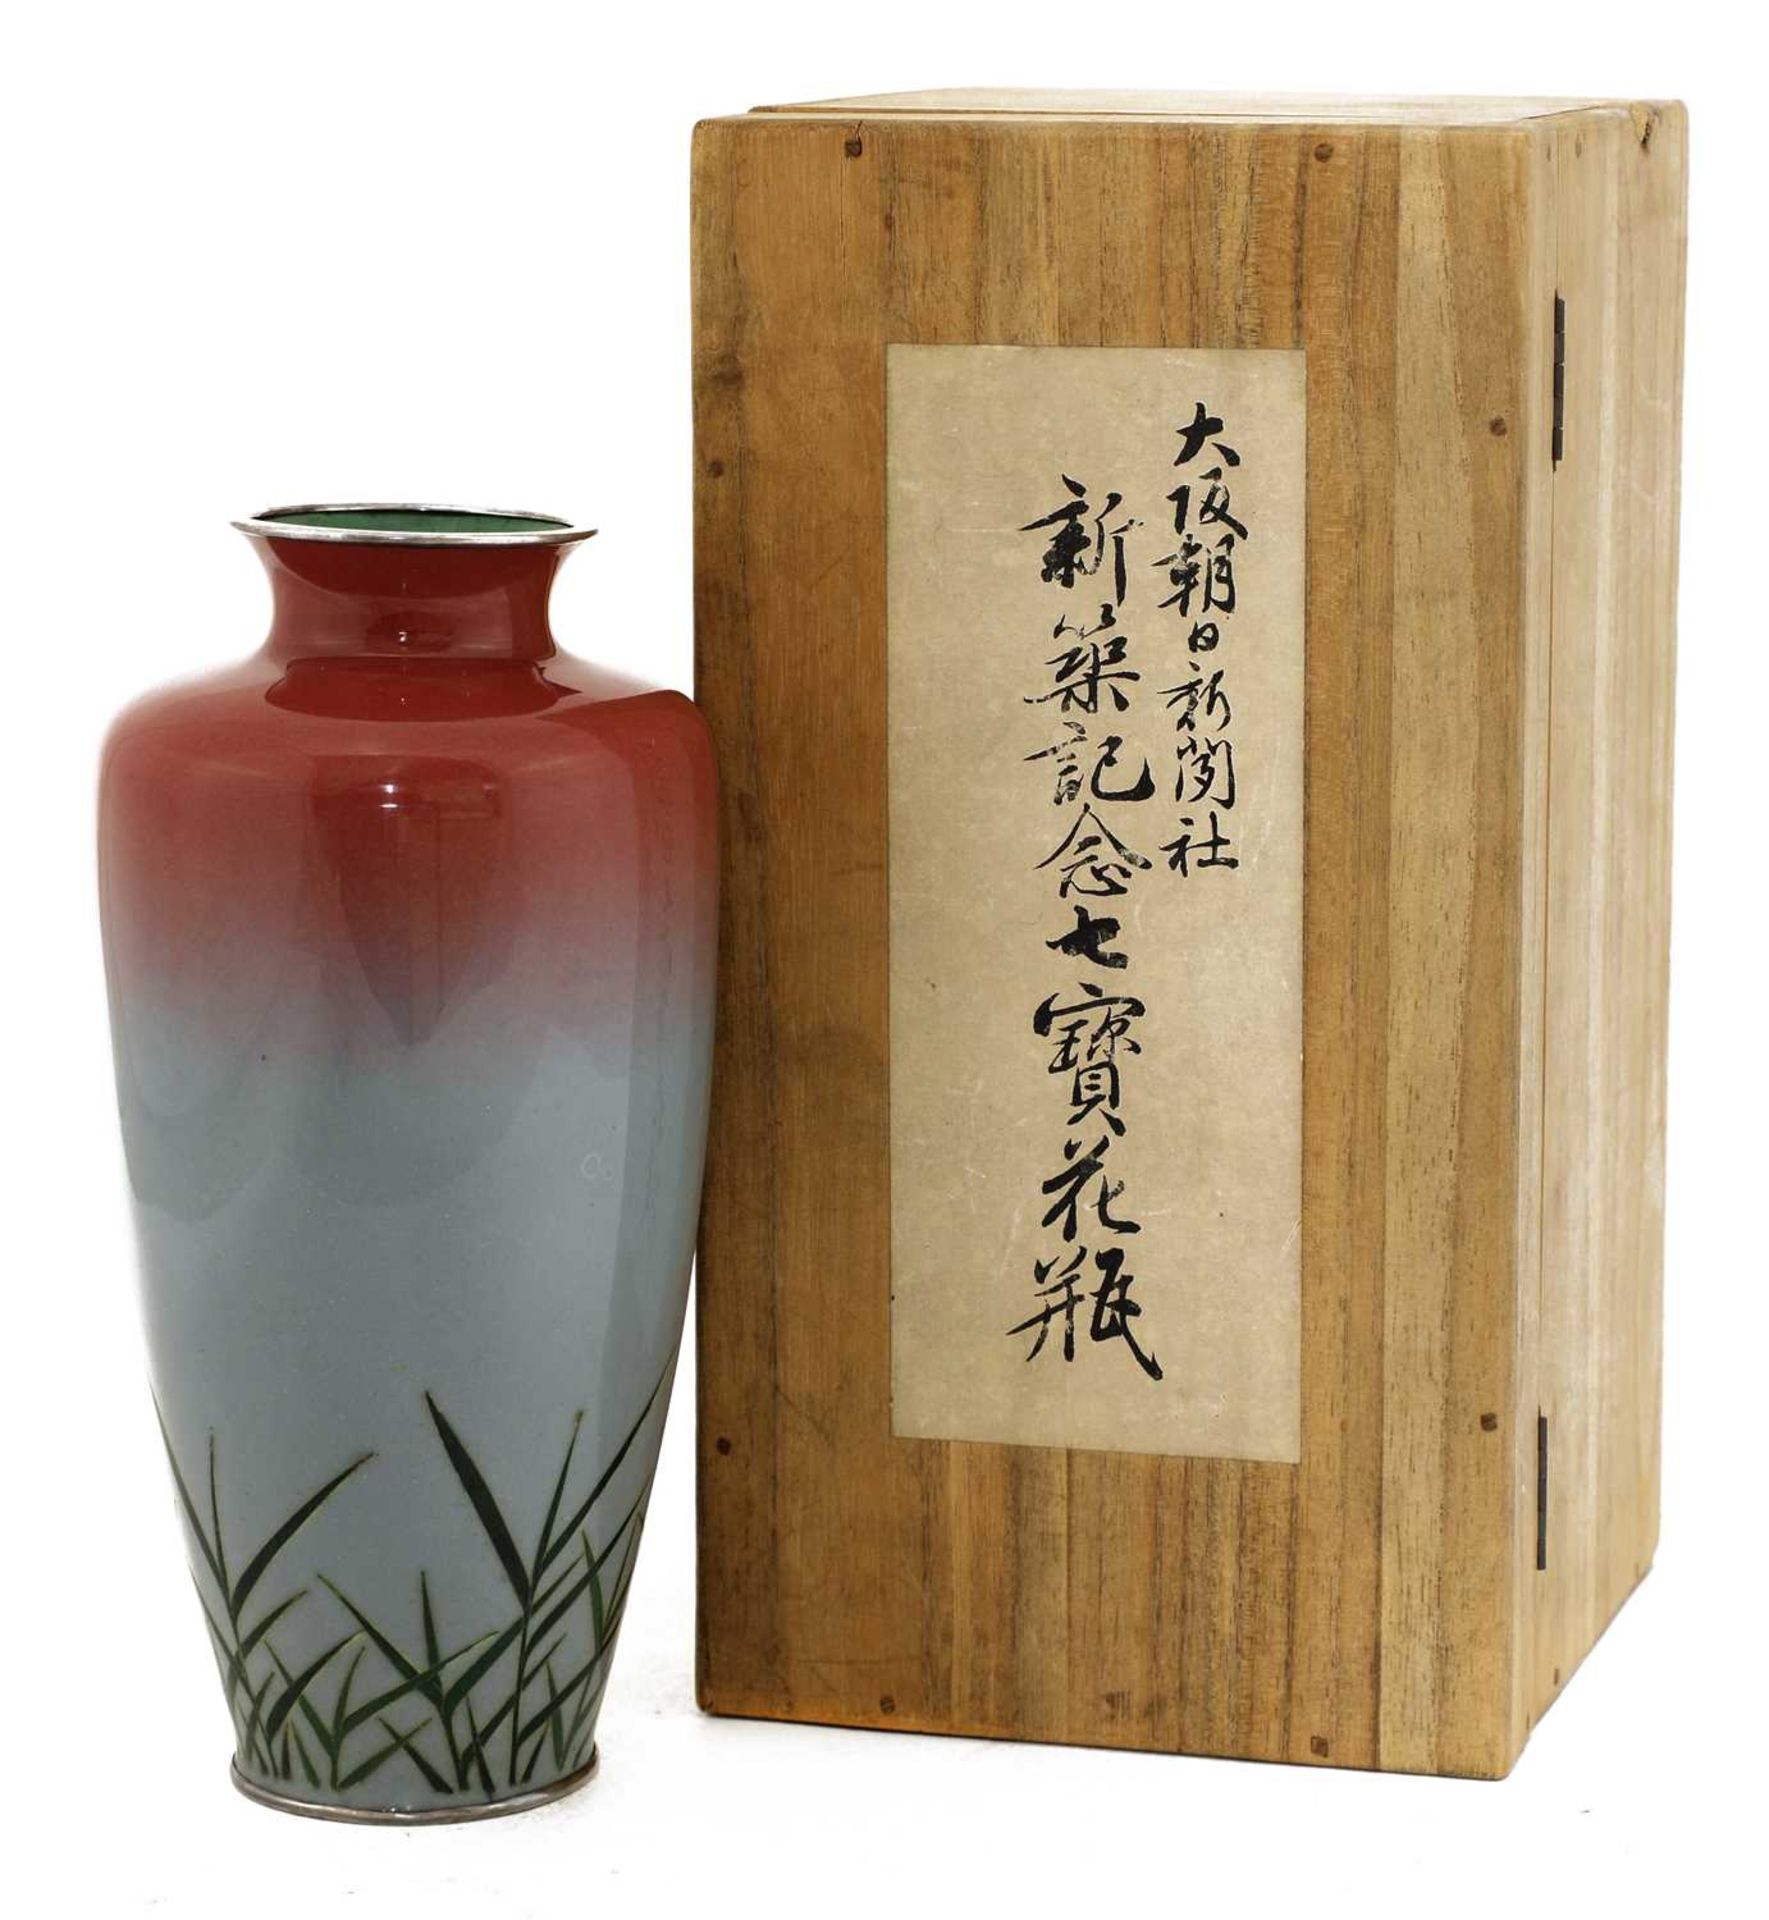 A Japanese cloisonné vase